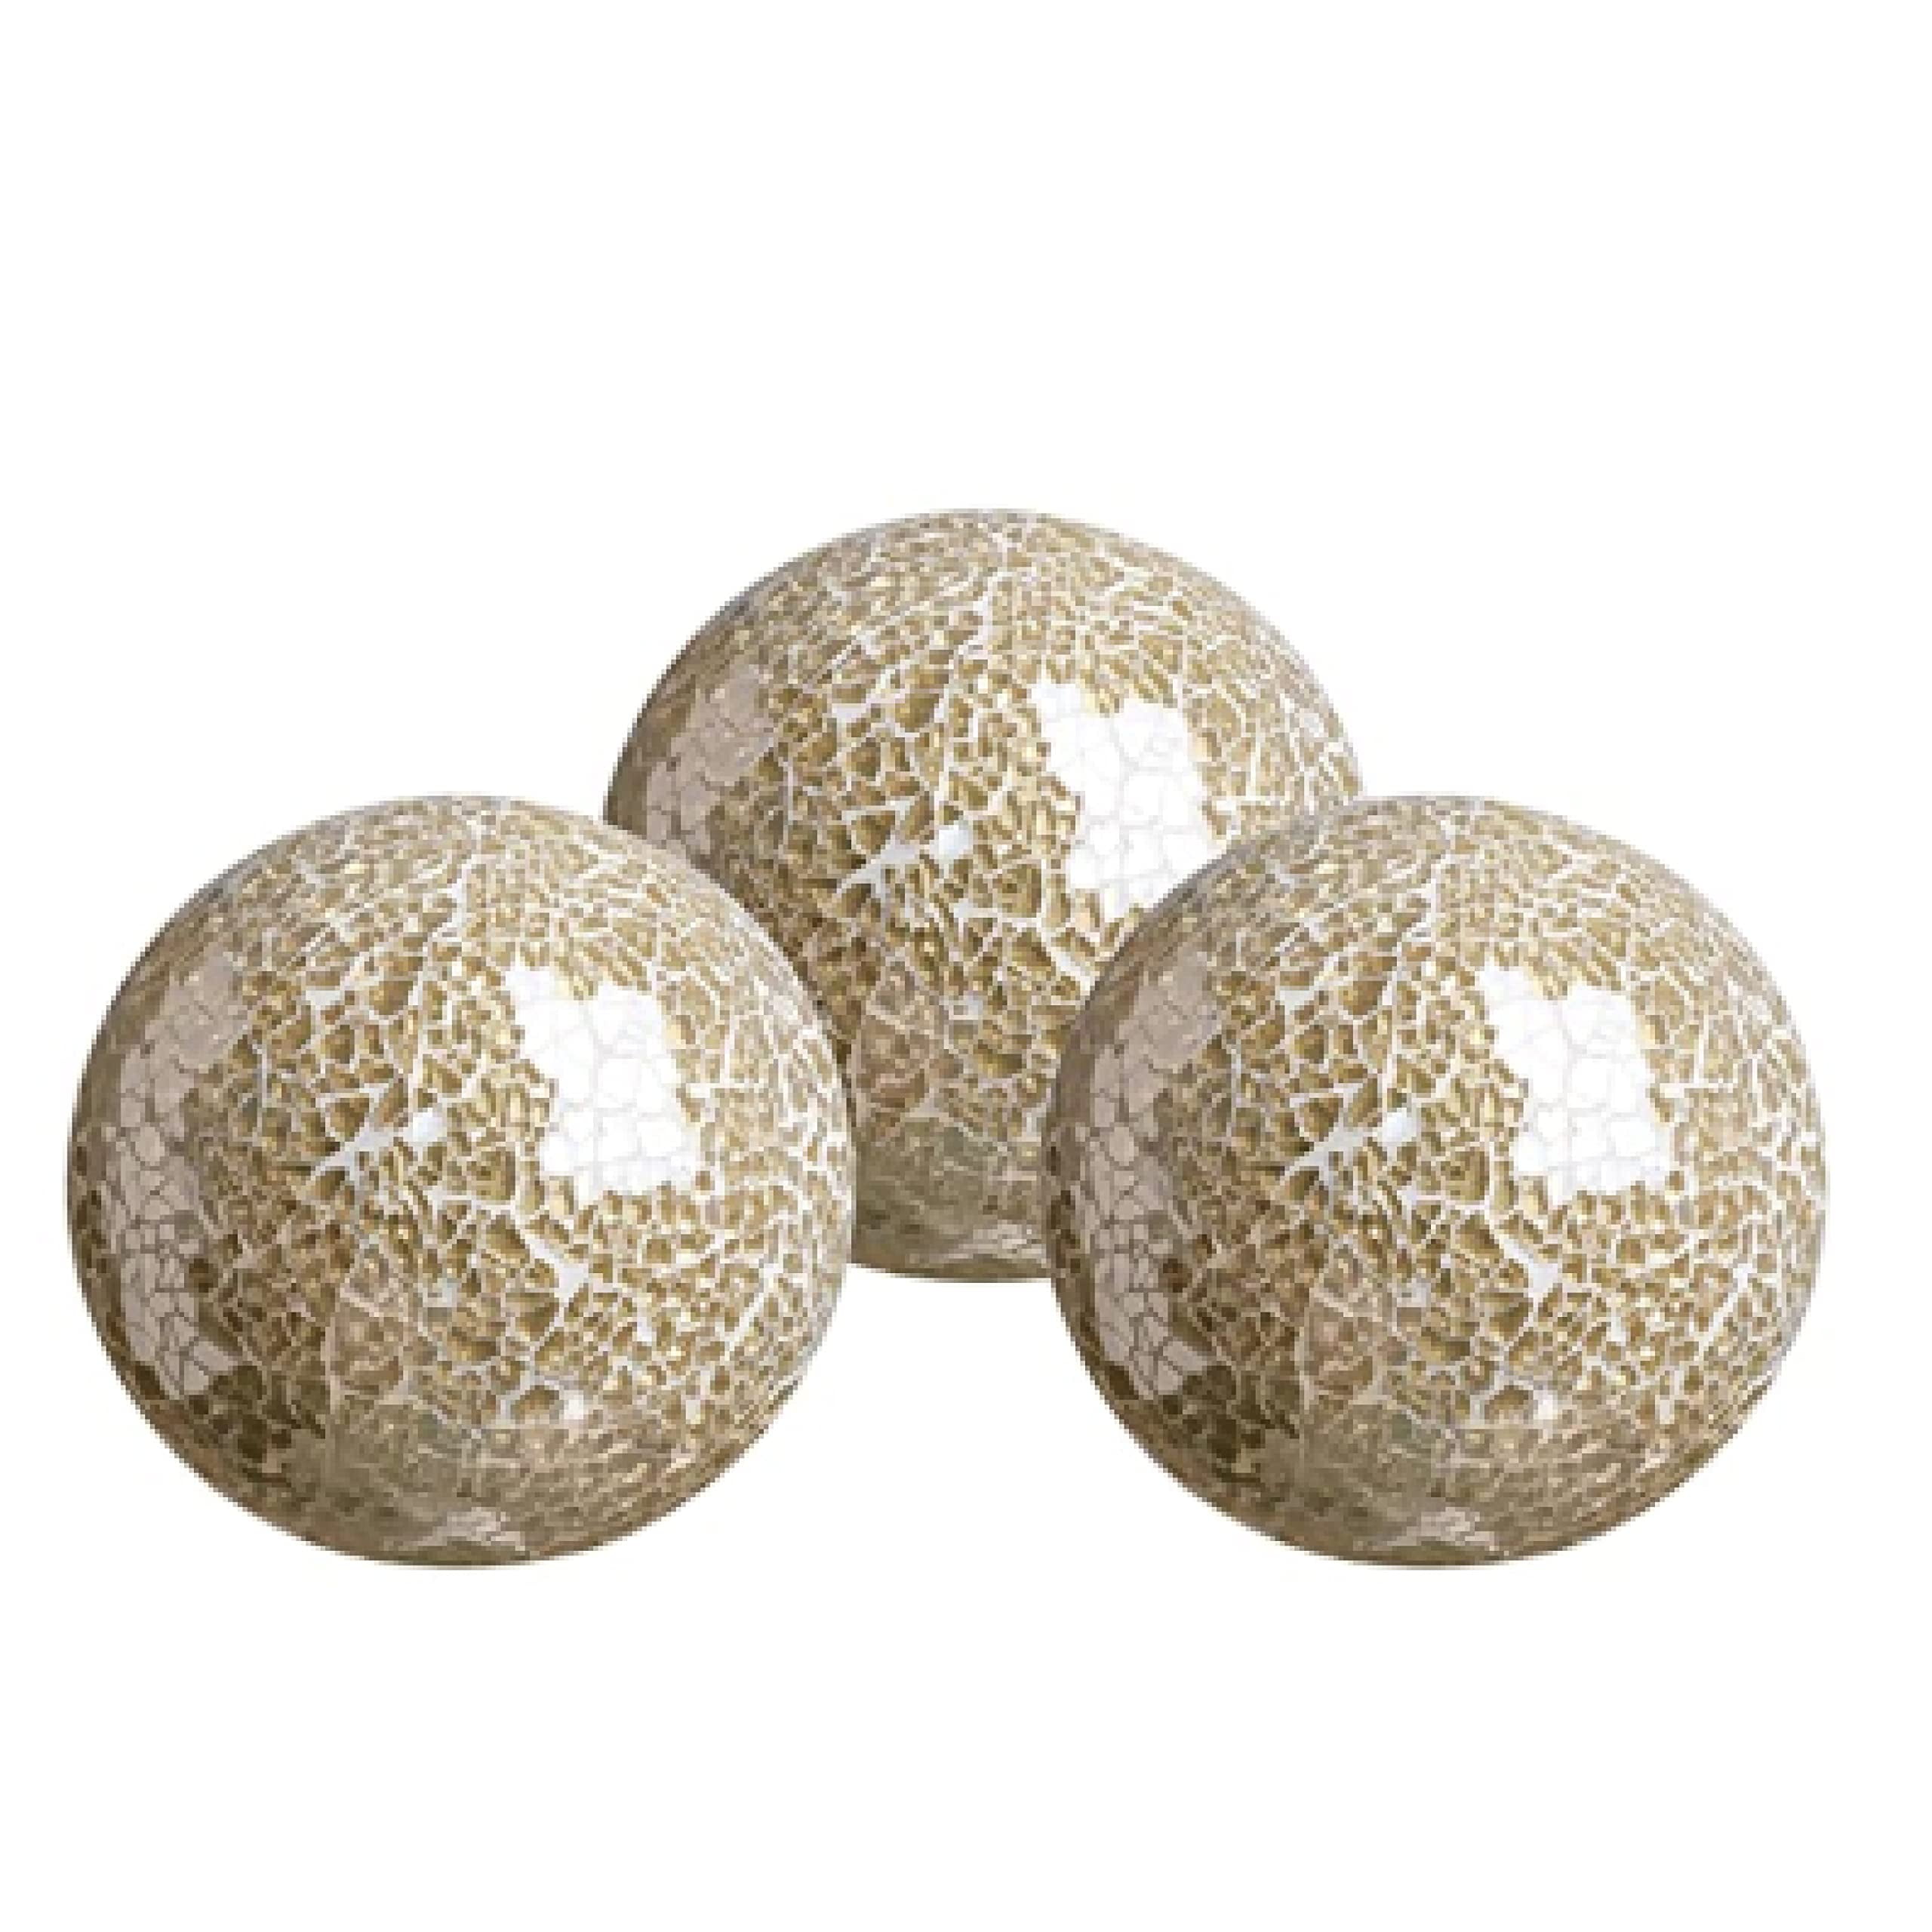 Handmade Decorative Balls Set Mosaic Glass Balls Centerpiece